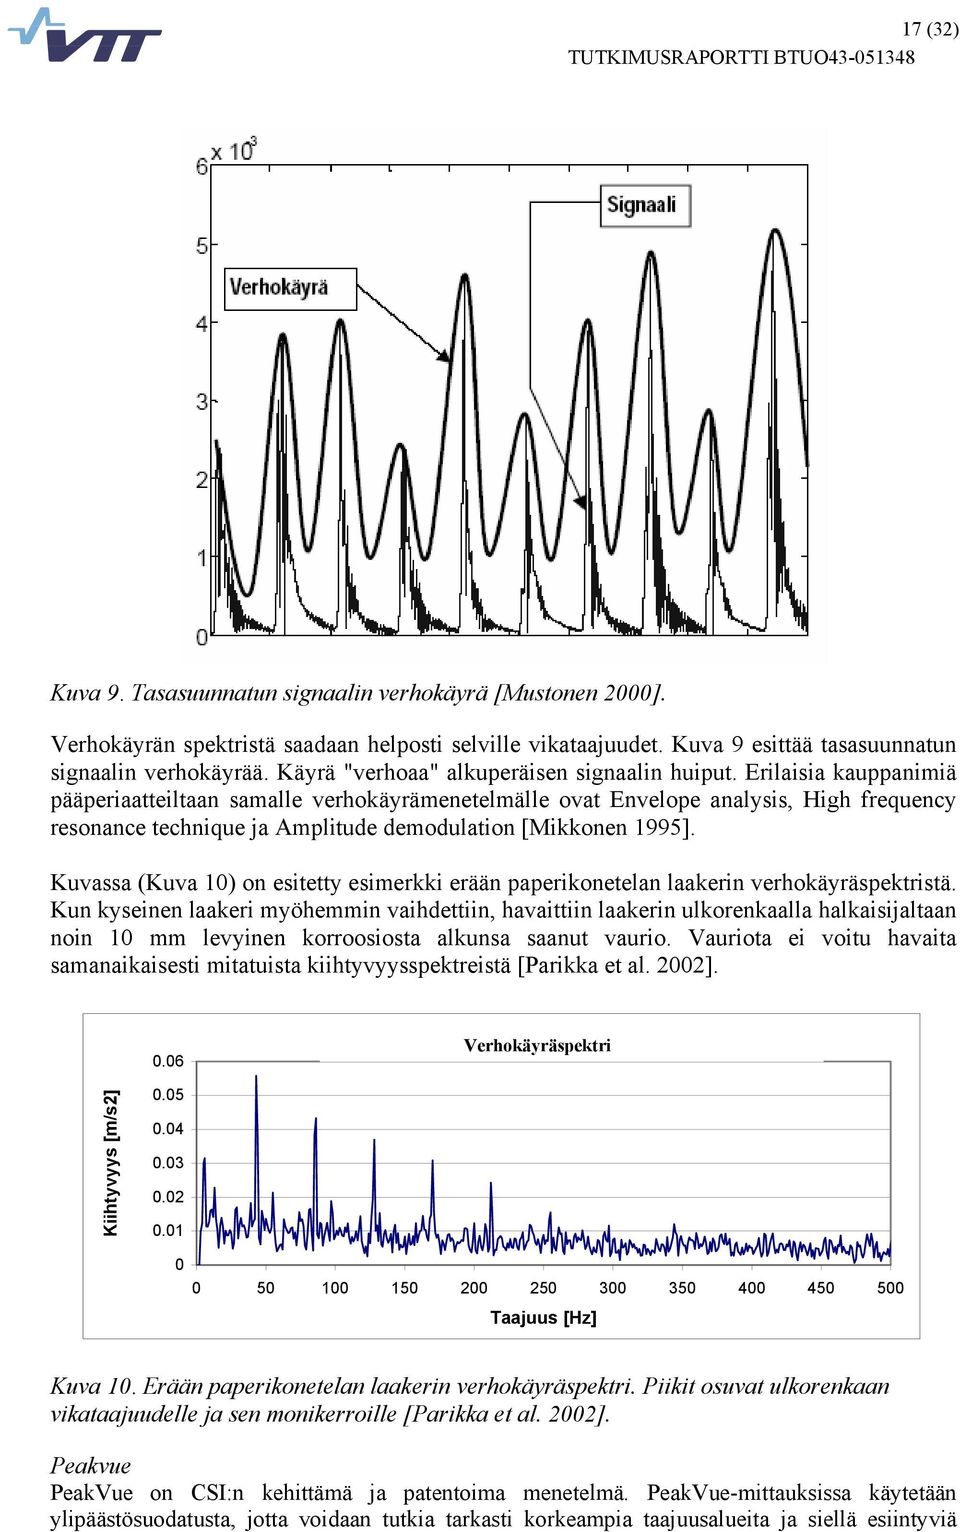 Erilaisia kauppanimiä pääperiaatteiltaan samalle verhokäyrämenetelmälle ovat Envelope analysis, High frequency resonance technique ja Amplitude demodulation [Mikkonen 1995].